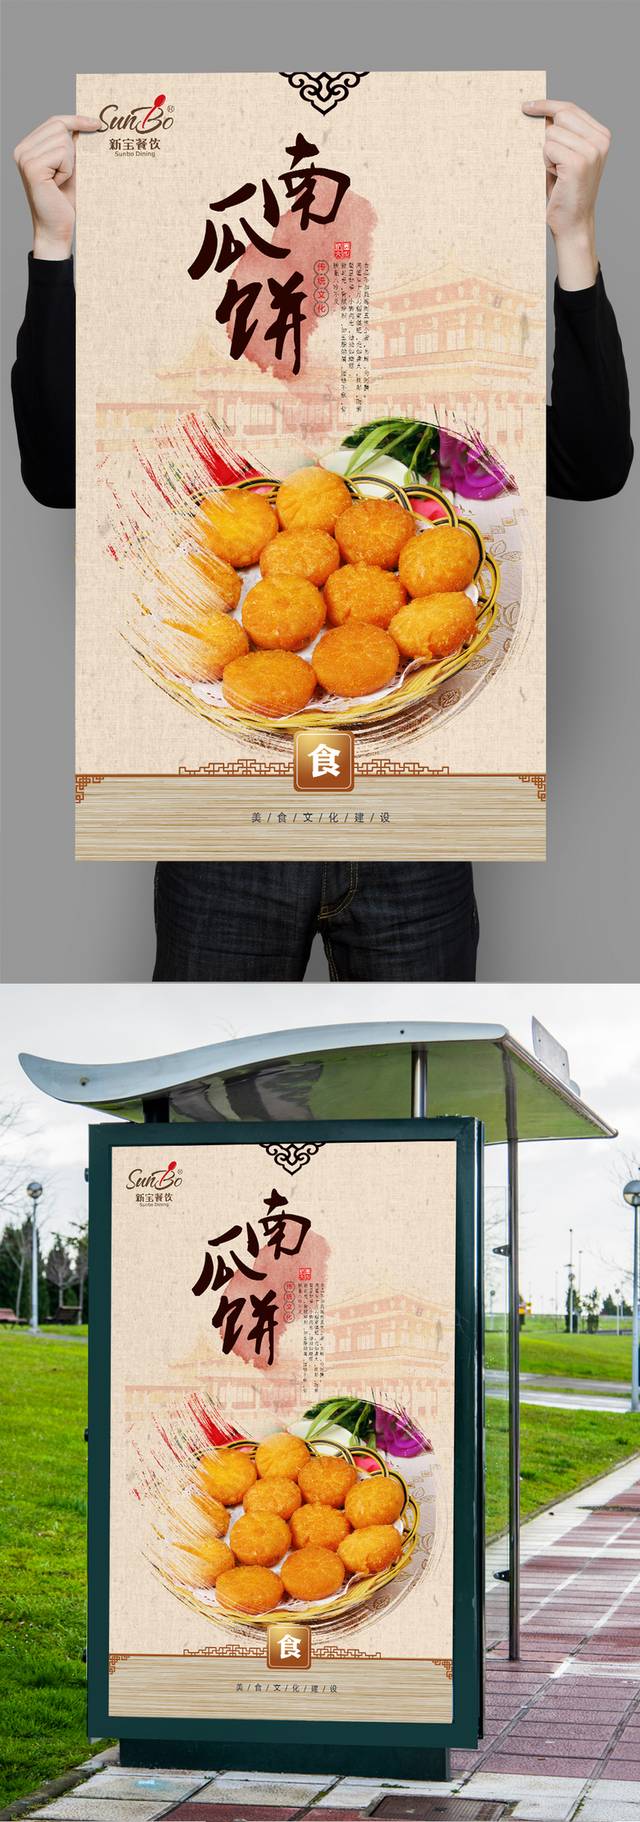 中国风南瓜饼宣传海报设计